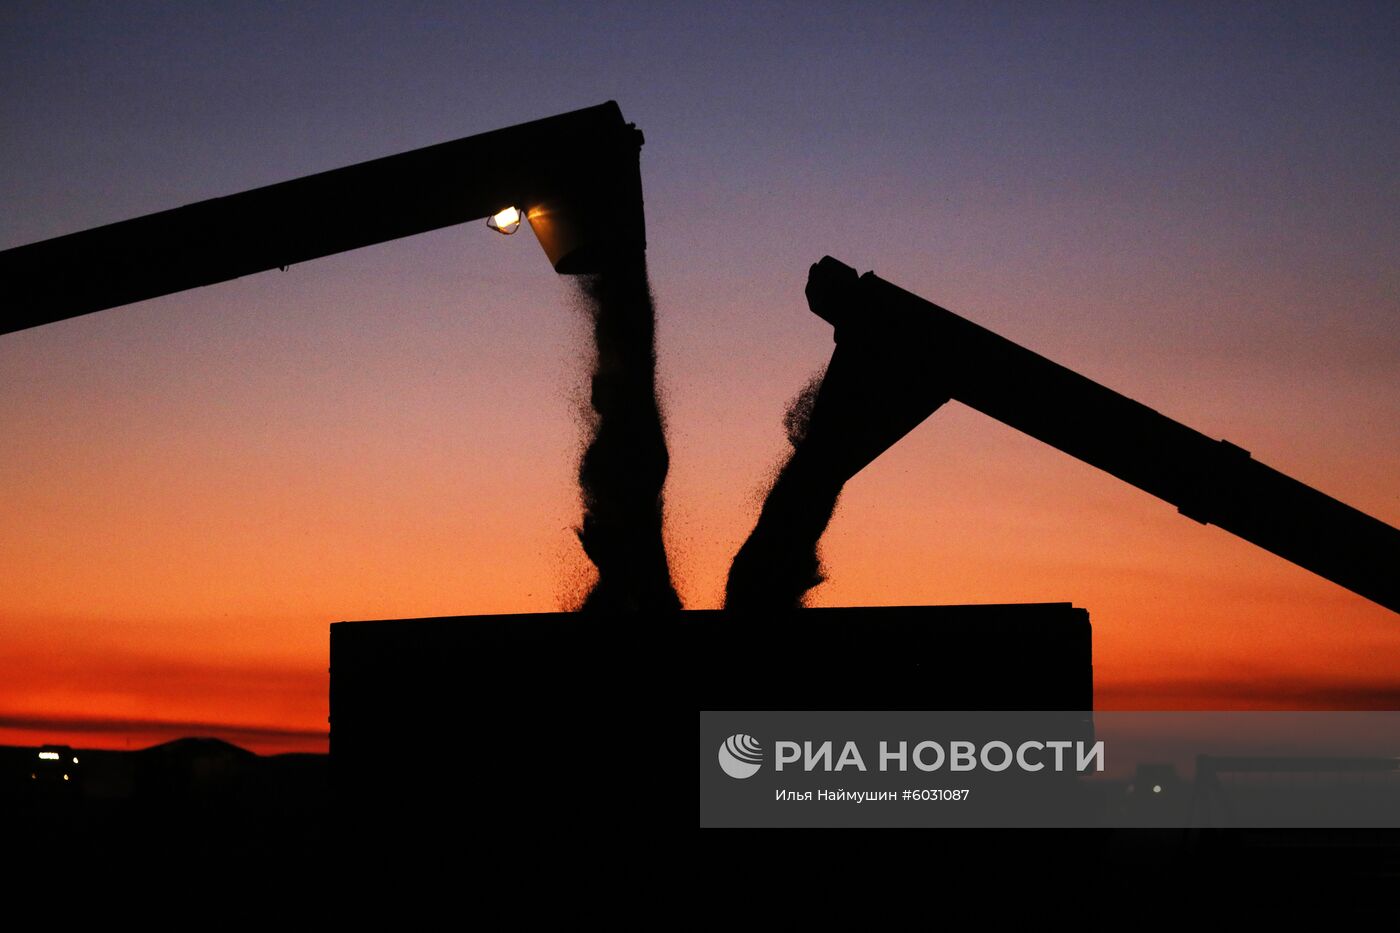 Уборка урожая рапса в Красноярском крае